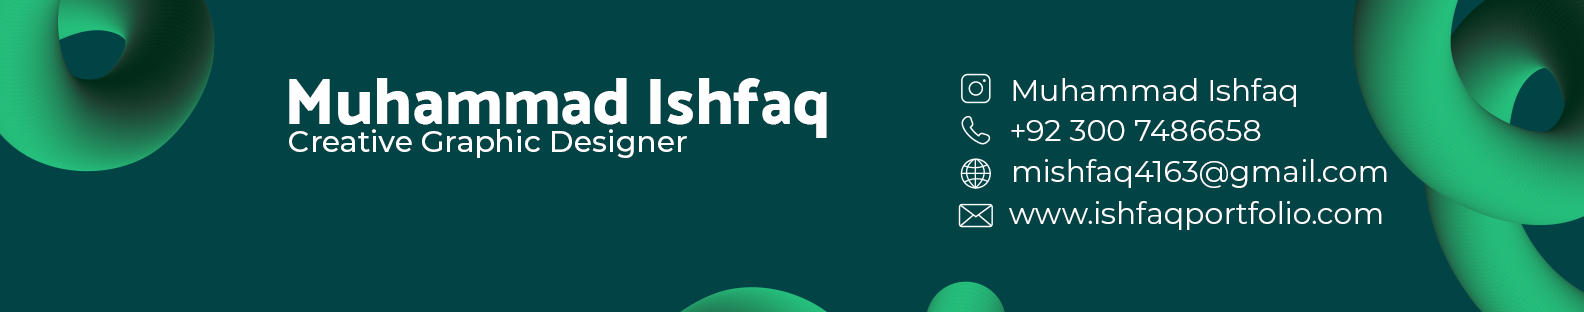 Muhammad Ishfaq's profile banner